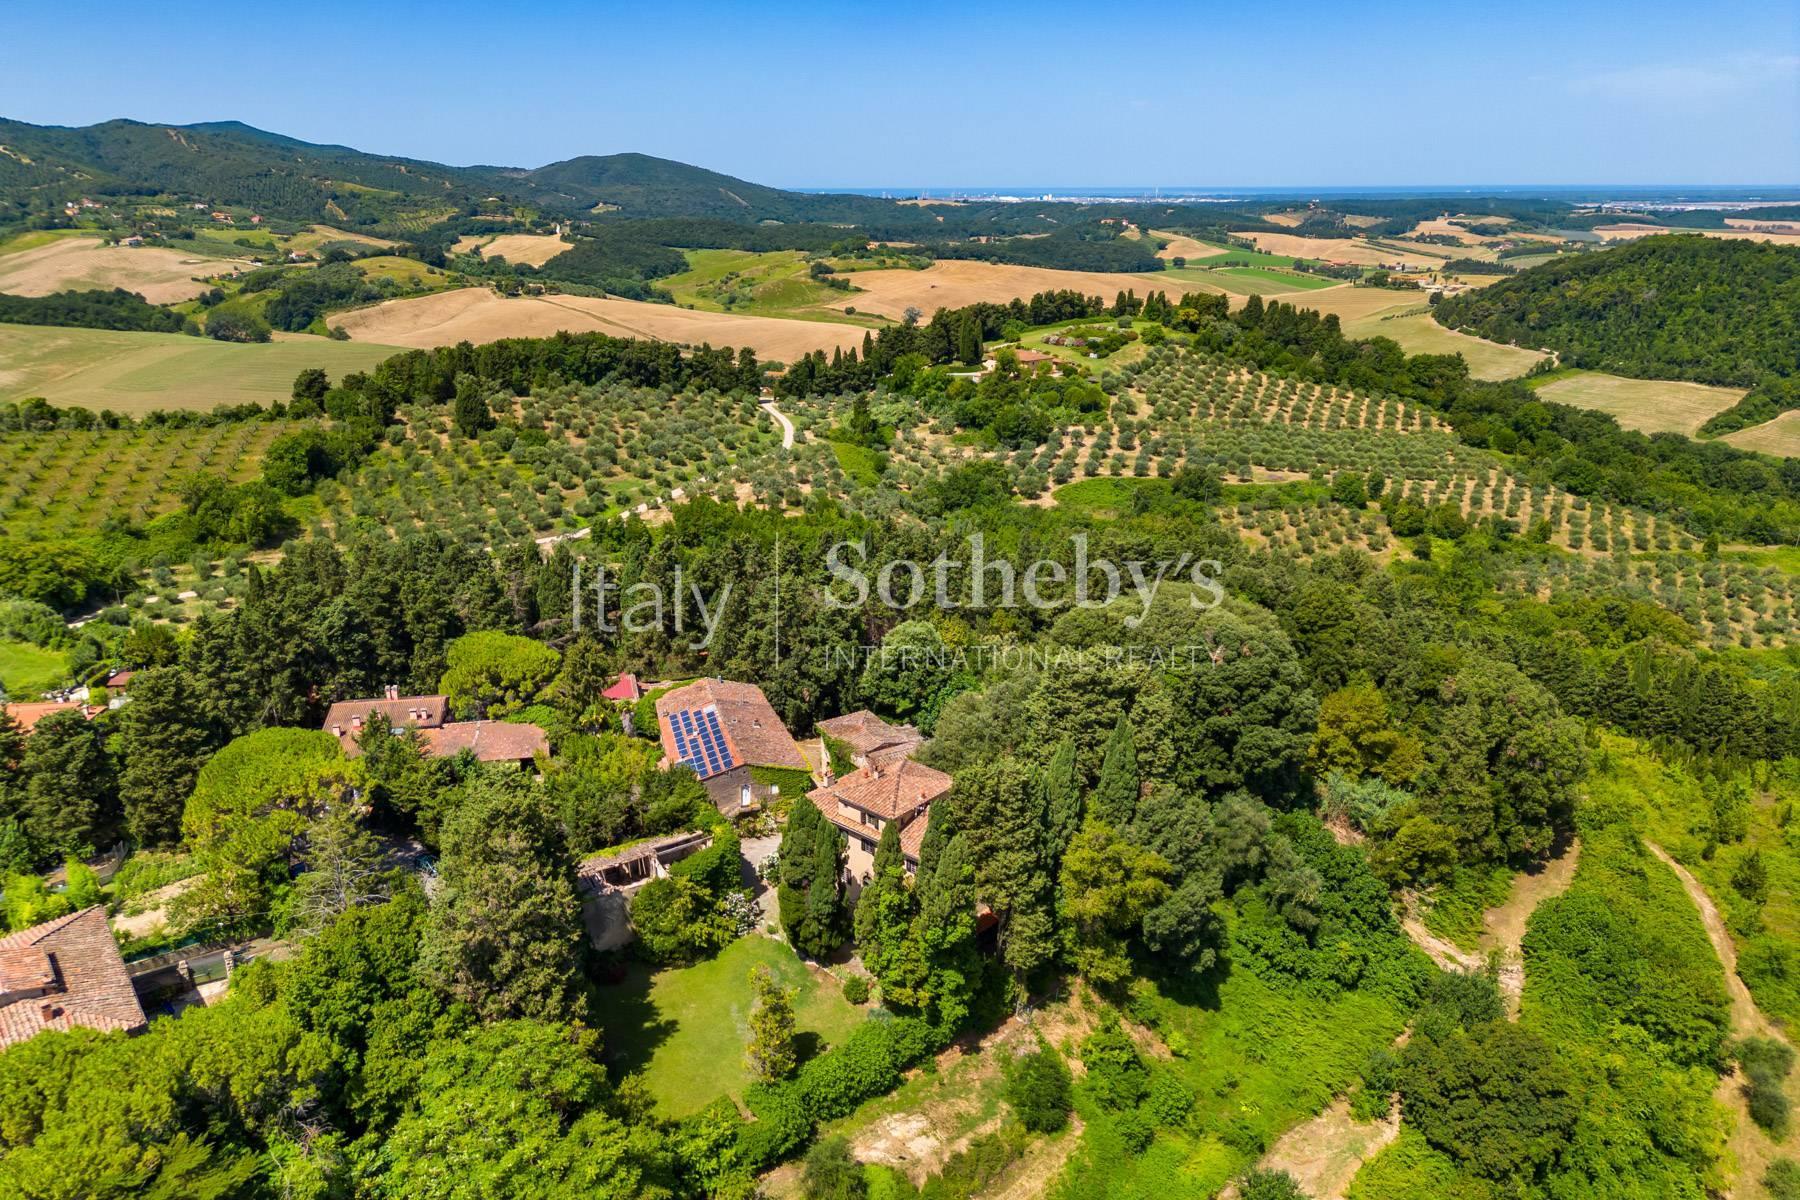 Meravigliosa villa nella campagna Toscana a due passi dalla Maremma - 42